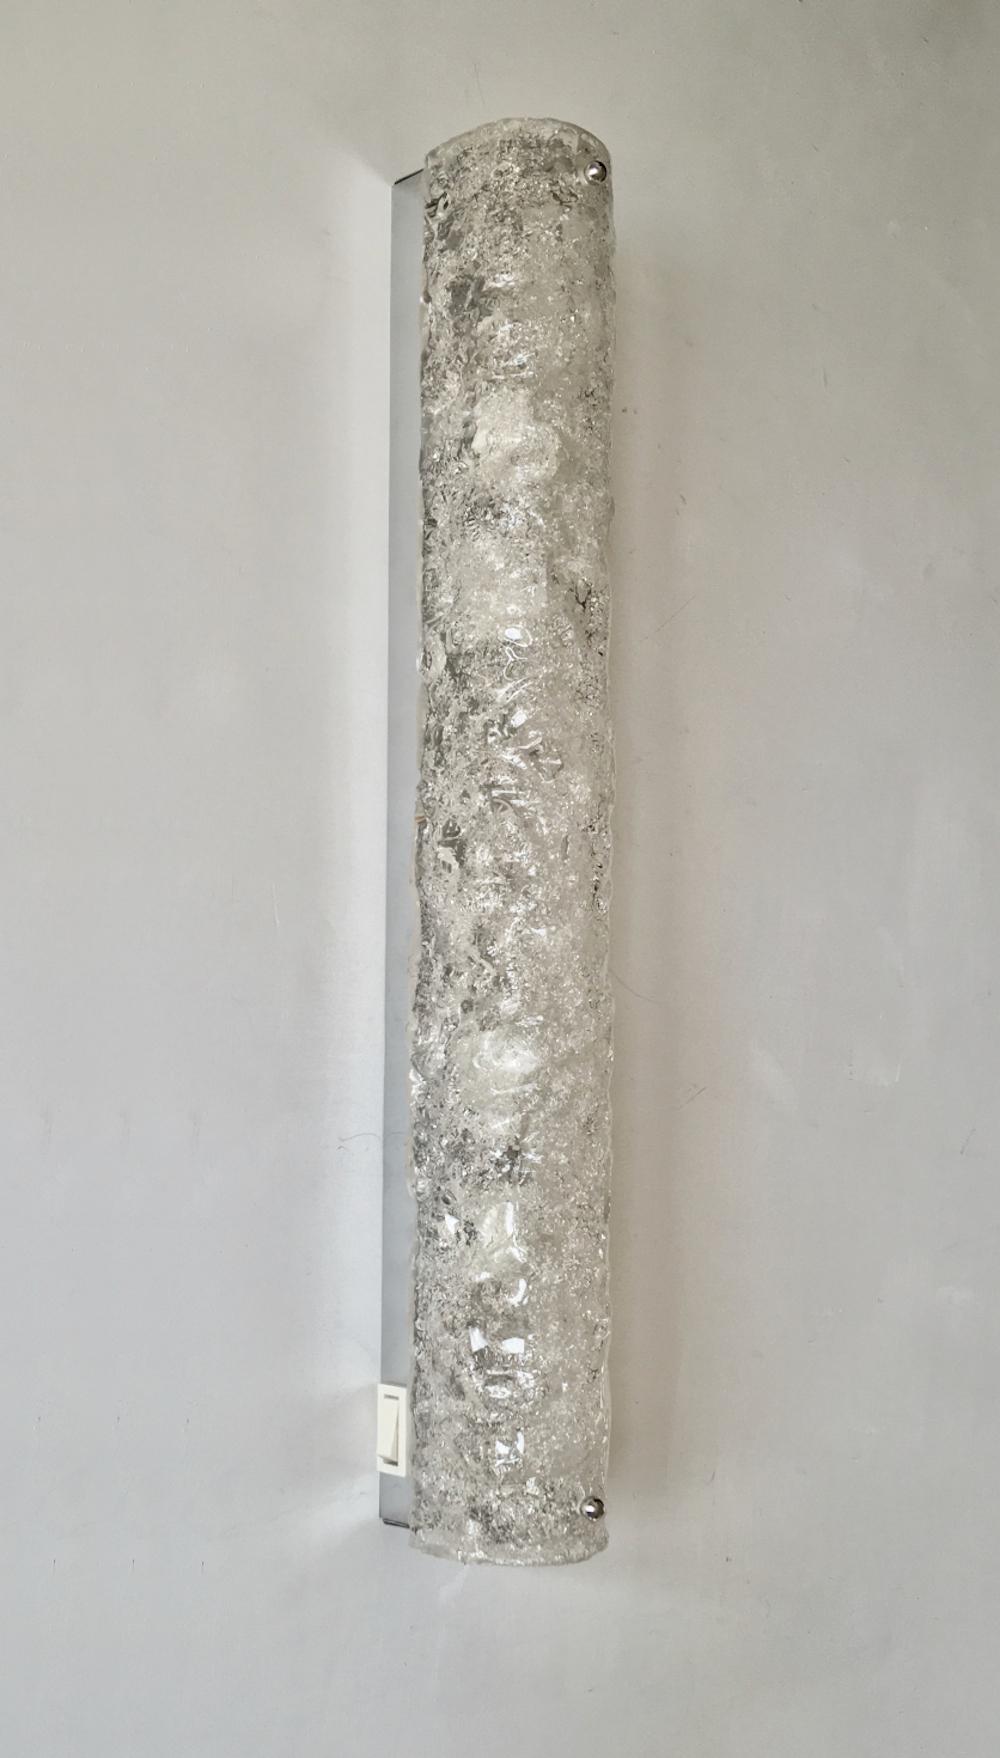 Longue et fine applique en verre de glace par Hillebrand, Allemagne, années 1960. 

Abat-jour incurvé en verre bullé et texturé sur une plaque arrière chromée de couleur argentée. Interrupteur blanc sur le côté. Dans l'image principale, la lumière